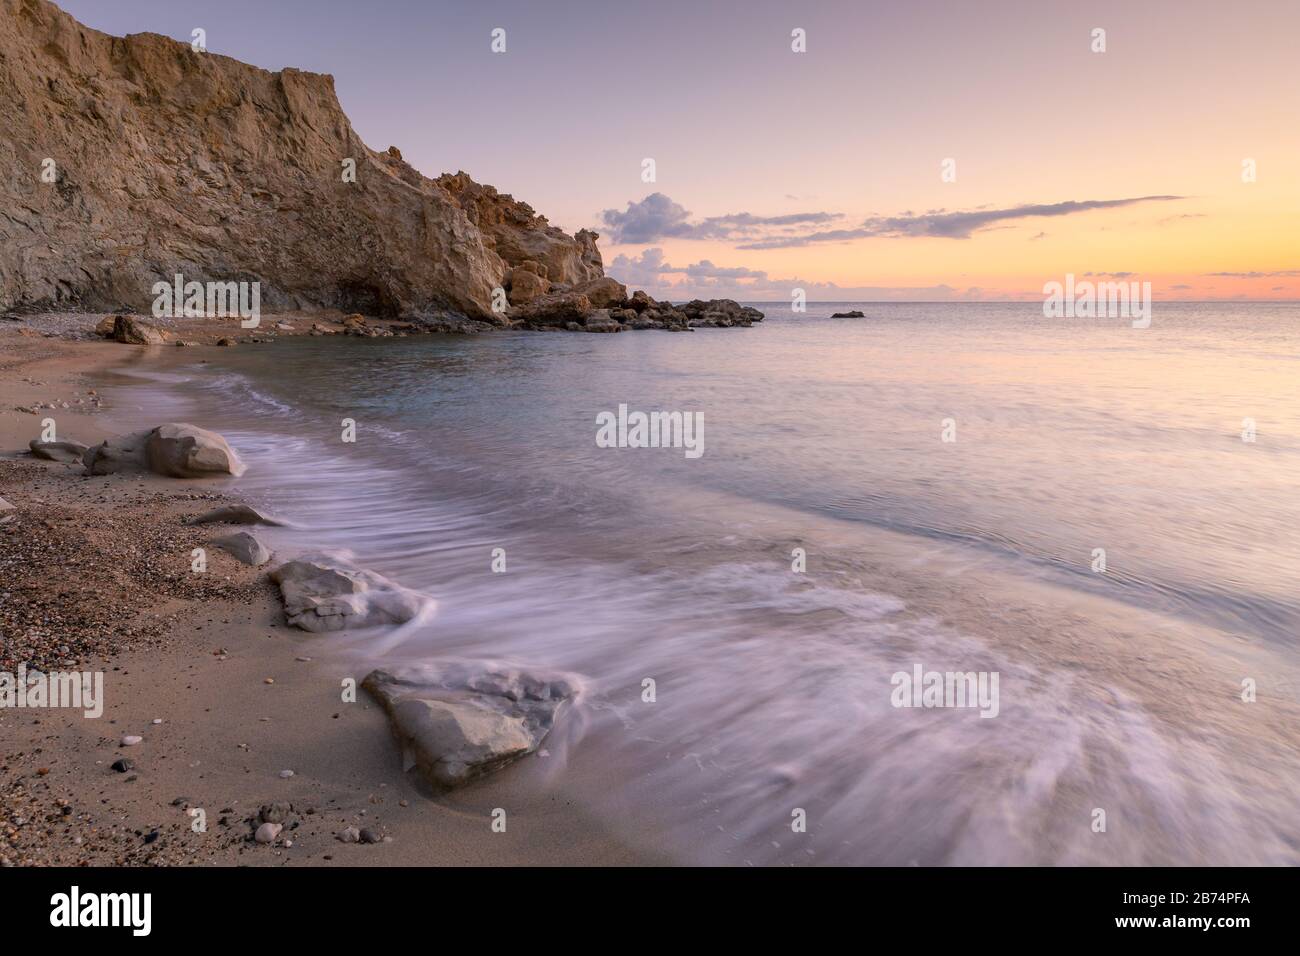 Spiaggia nei pressi del villaggio di Kalo Nero nella parte meridionale di Creta. Foto Stock